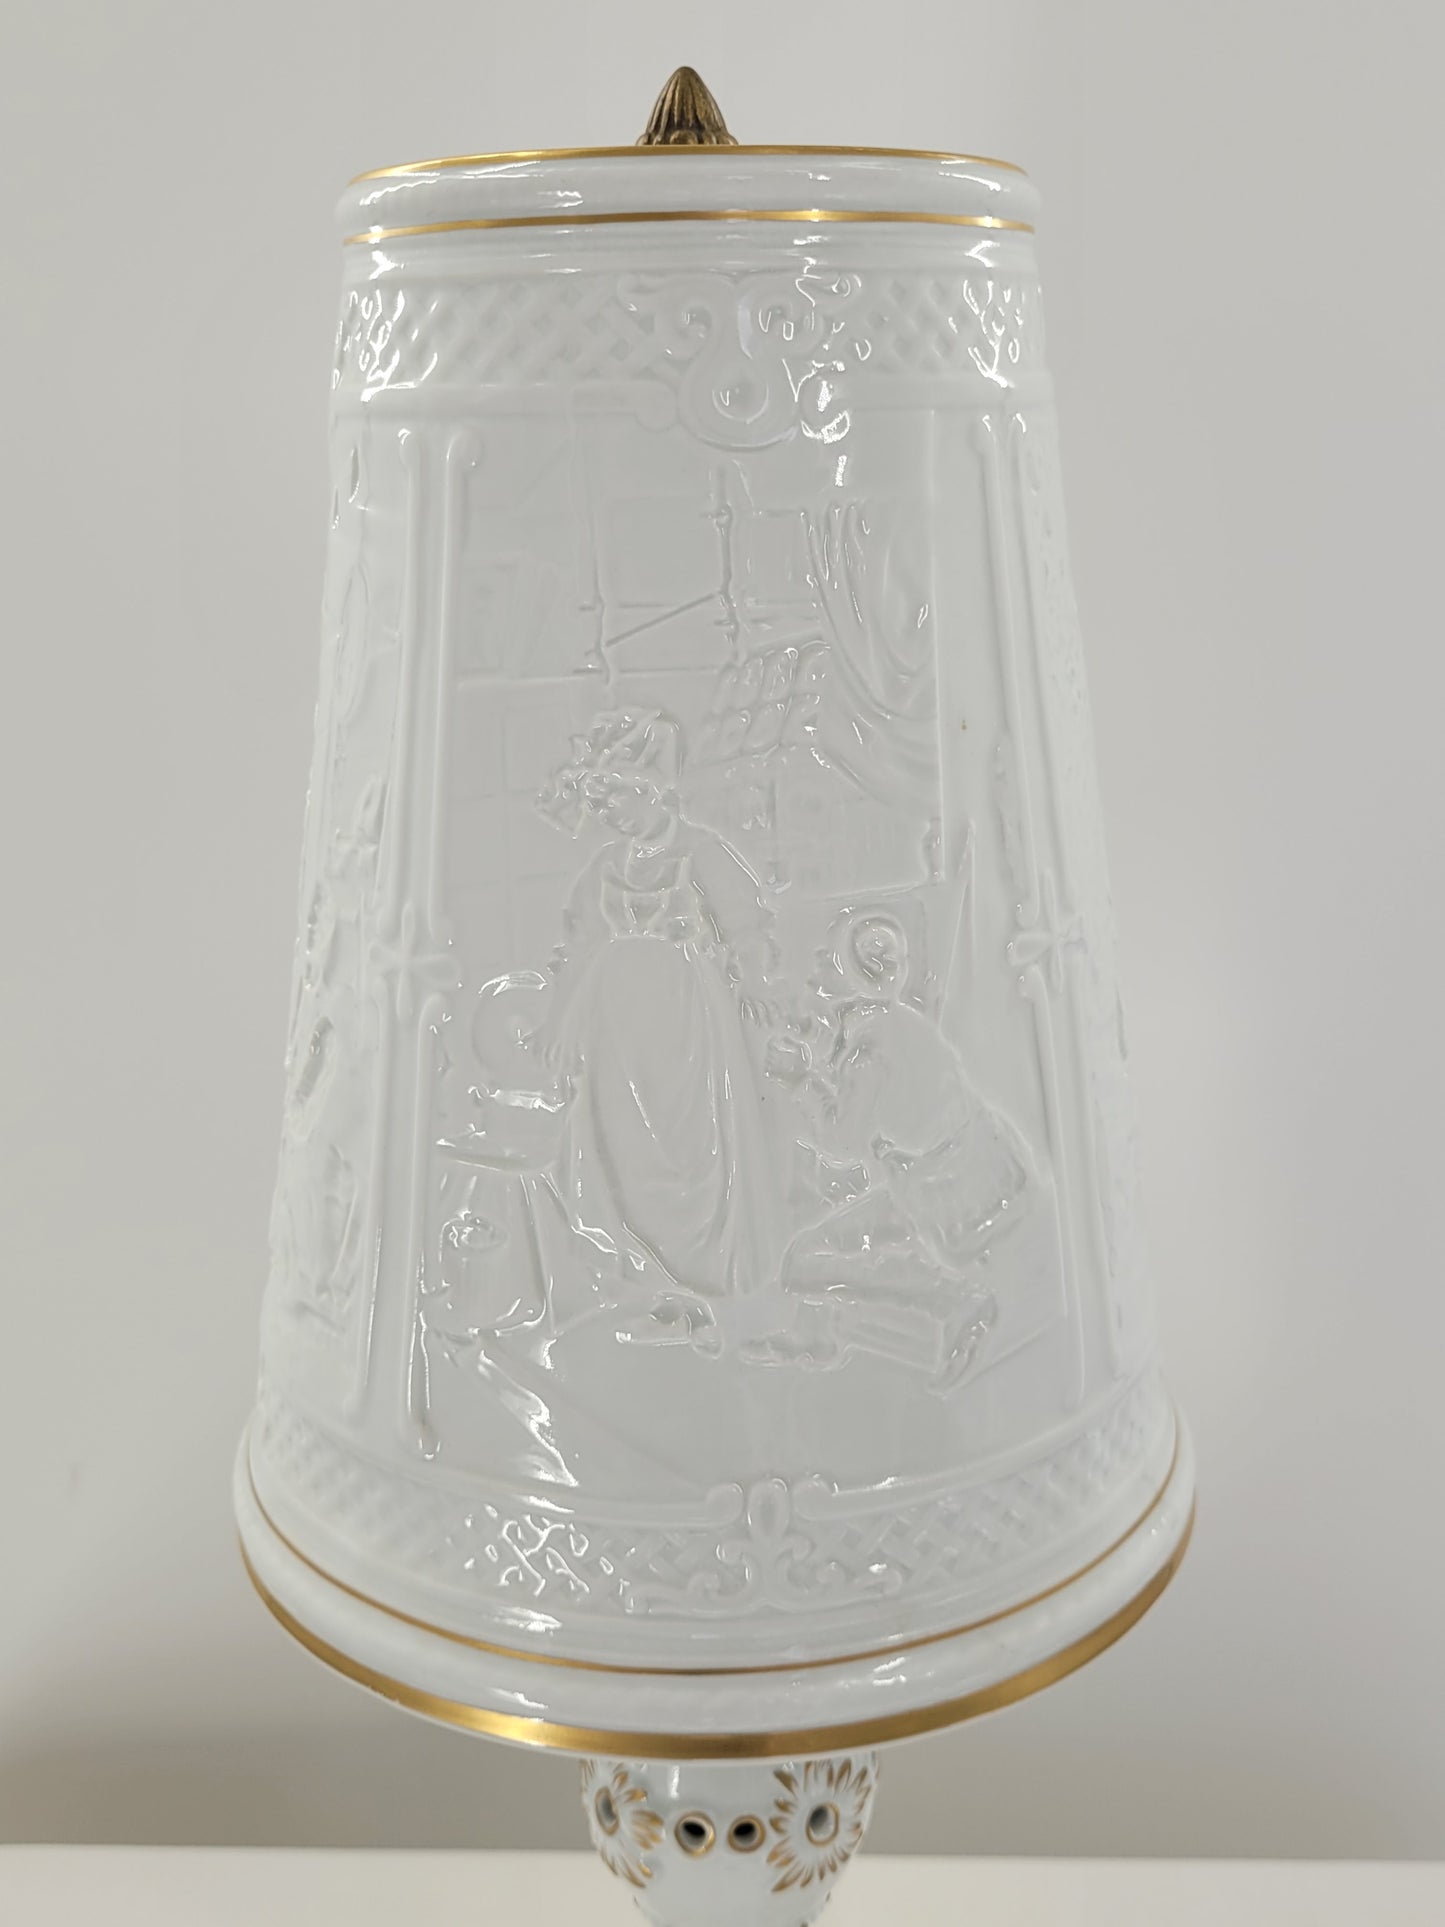 Schierholz Porzellan Tischlampe, Signiert J. Freitag, Reliefarbeiten